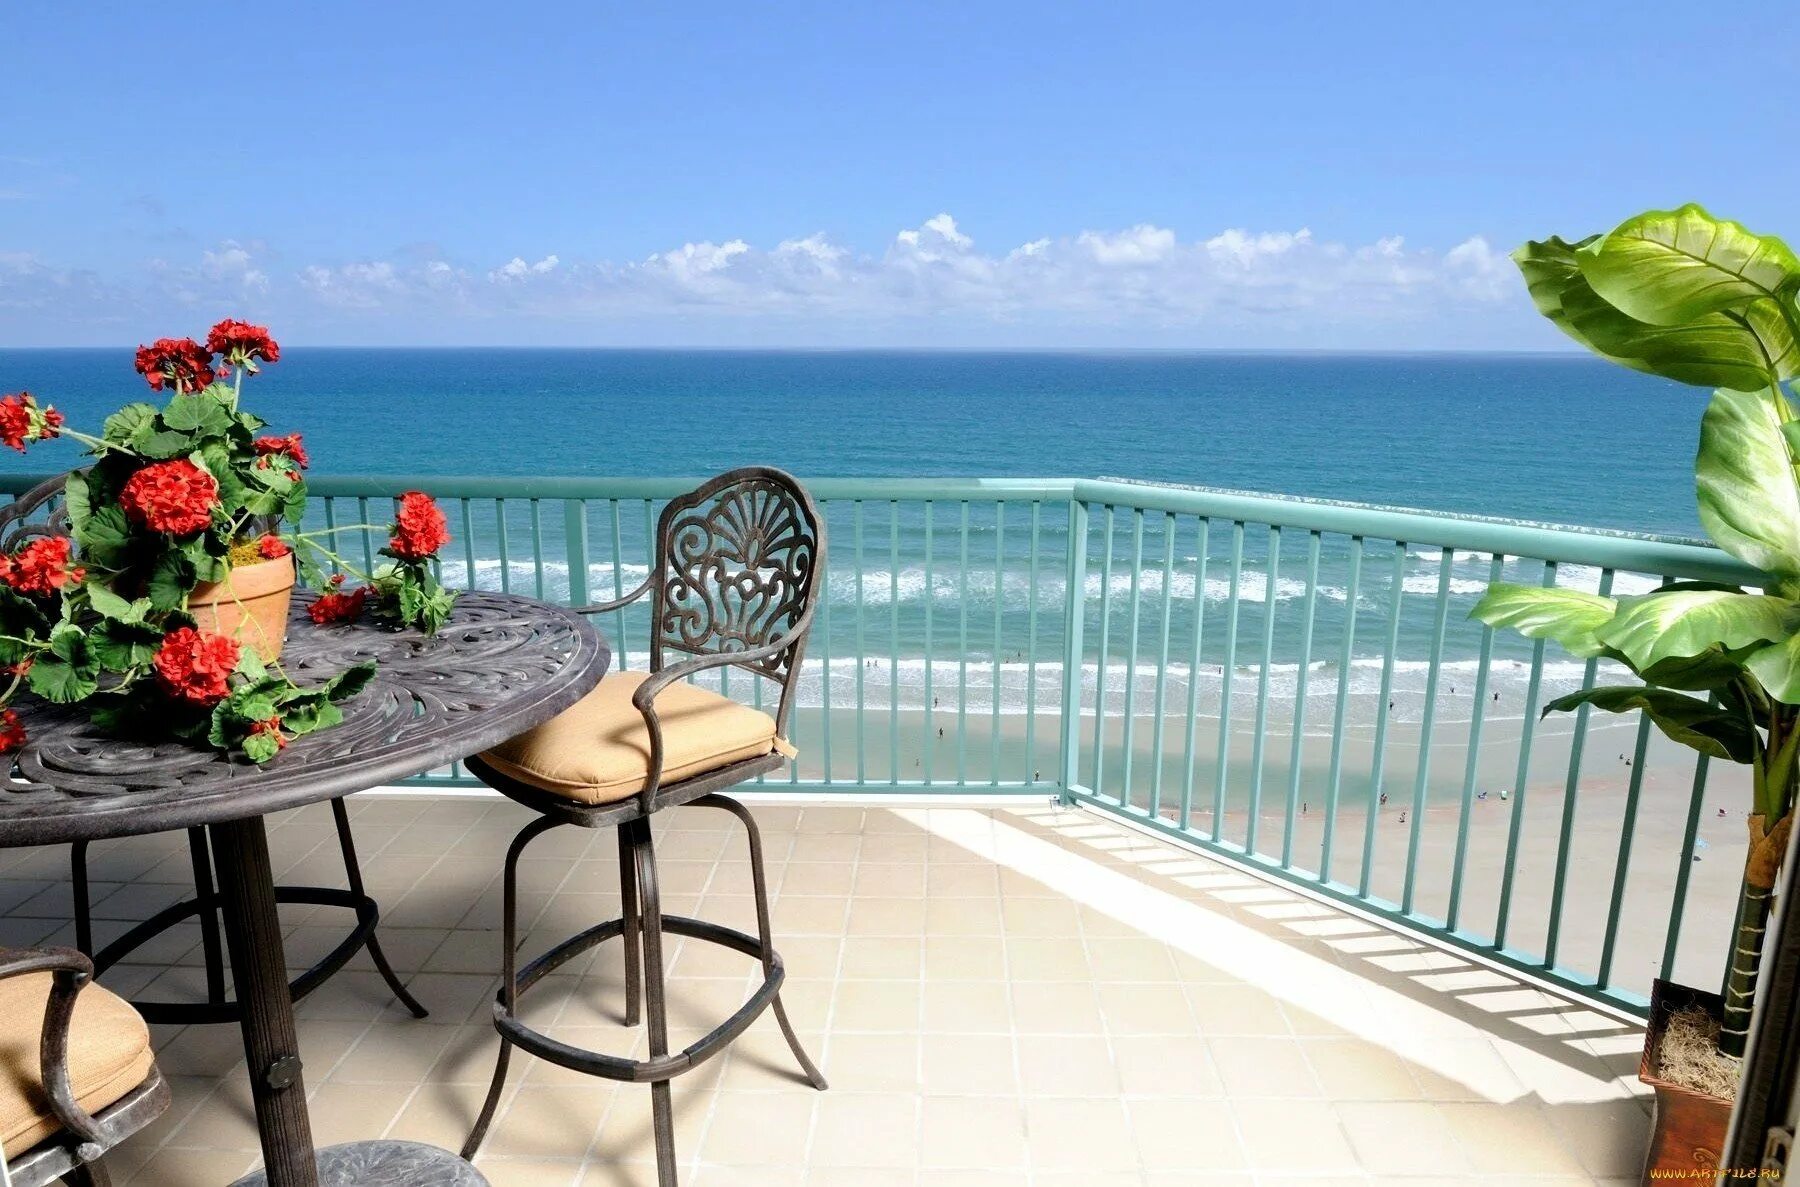 Фотообои стола. Вид на море. Вид на море с террасы. Веранда с видом на море. Вид на море с балкона.